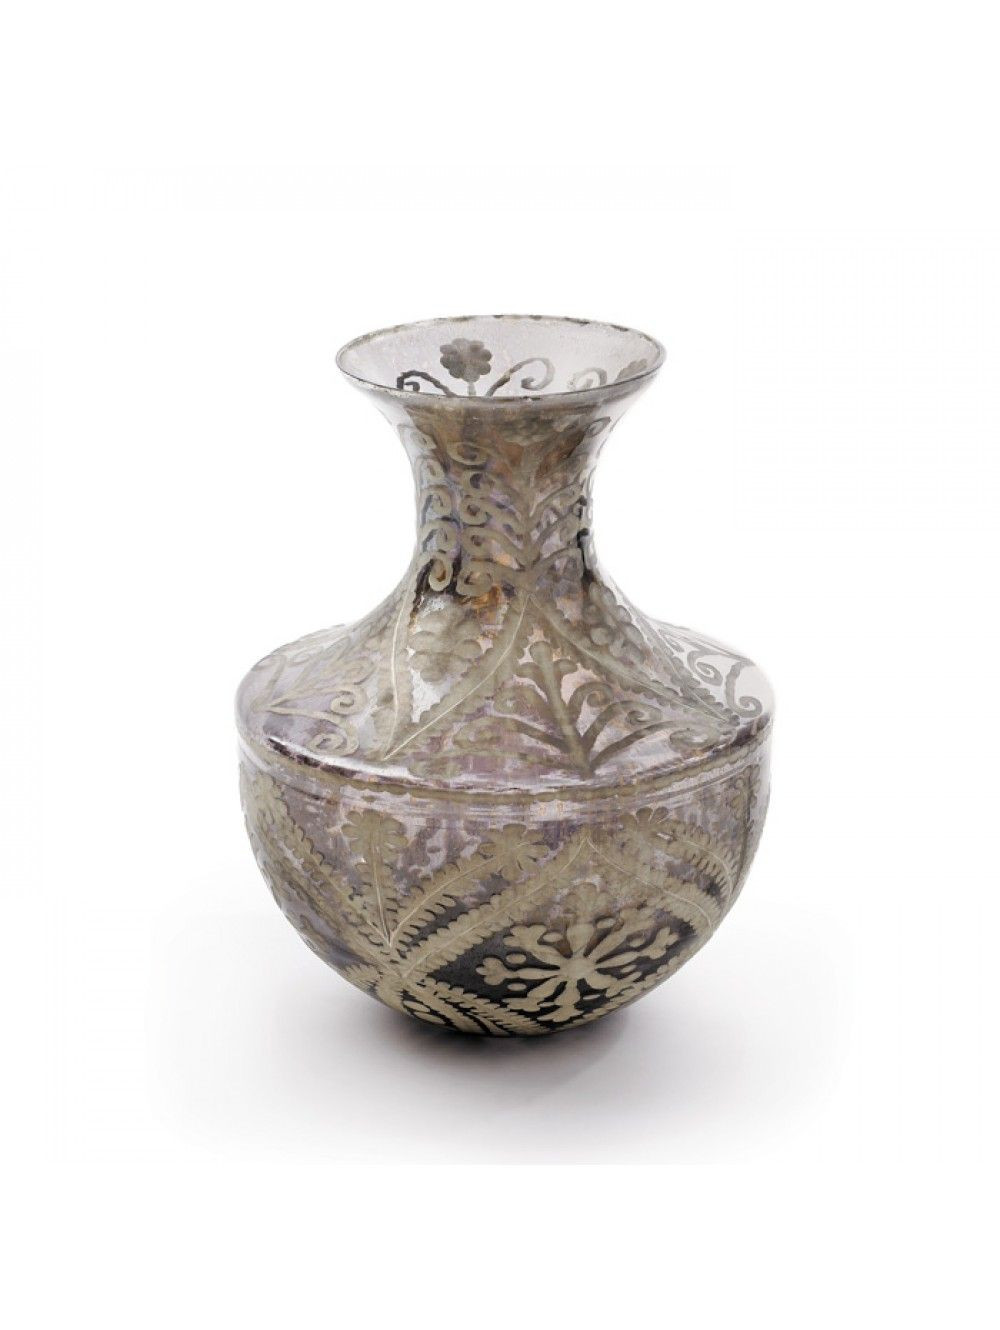 20 Famous Silver Urn Vase 2024 free download silver urn vase of leo vase dh mbr pinterest within leo vase